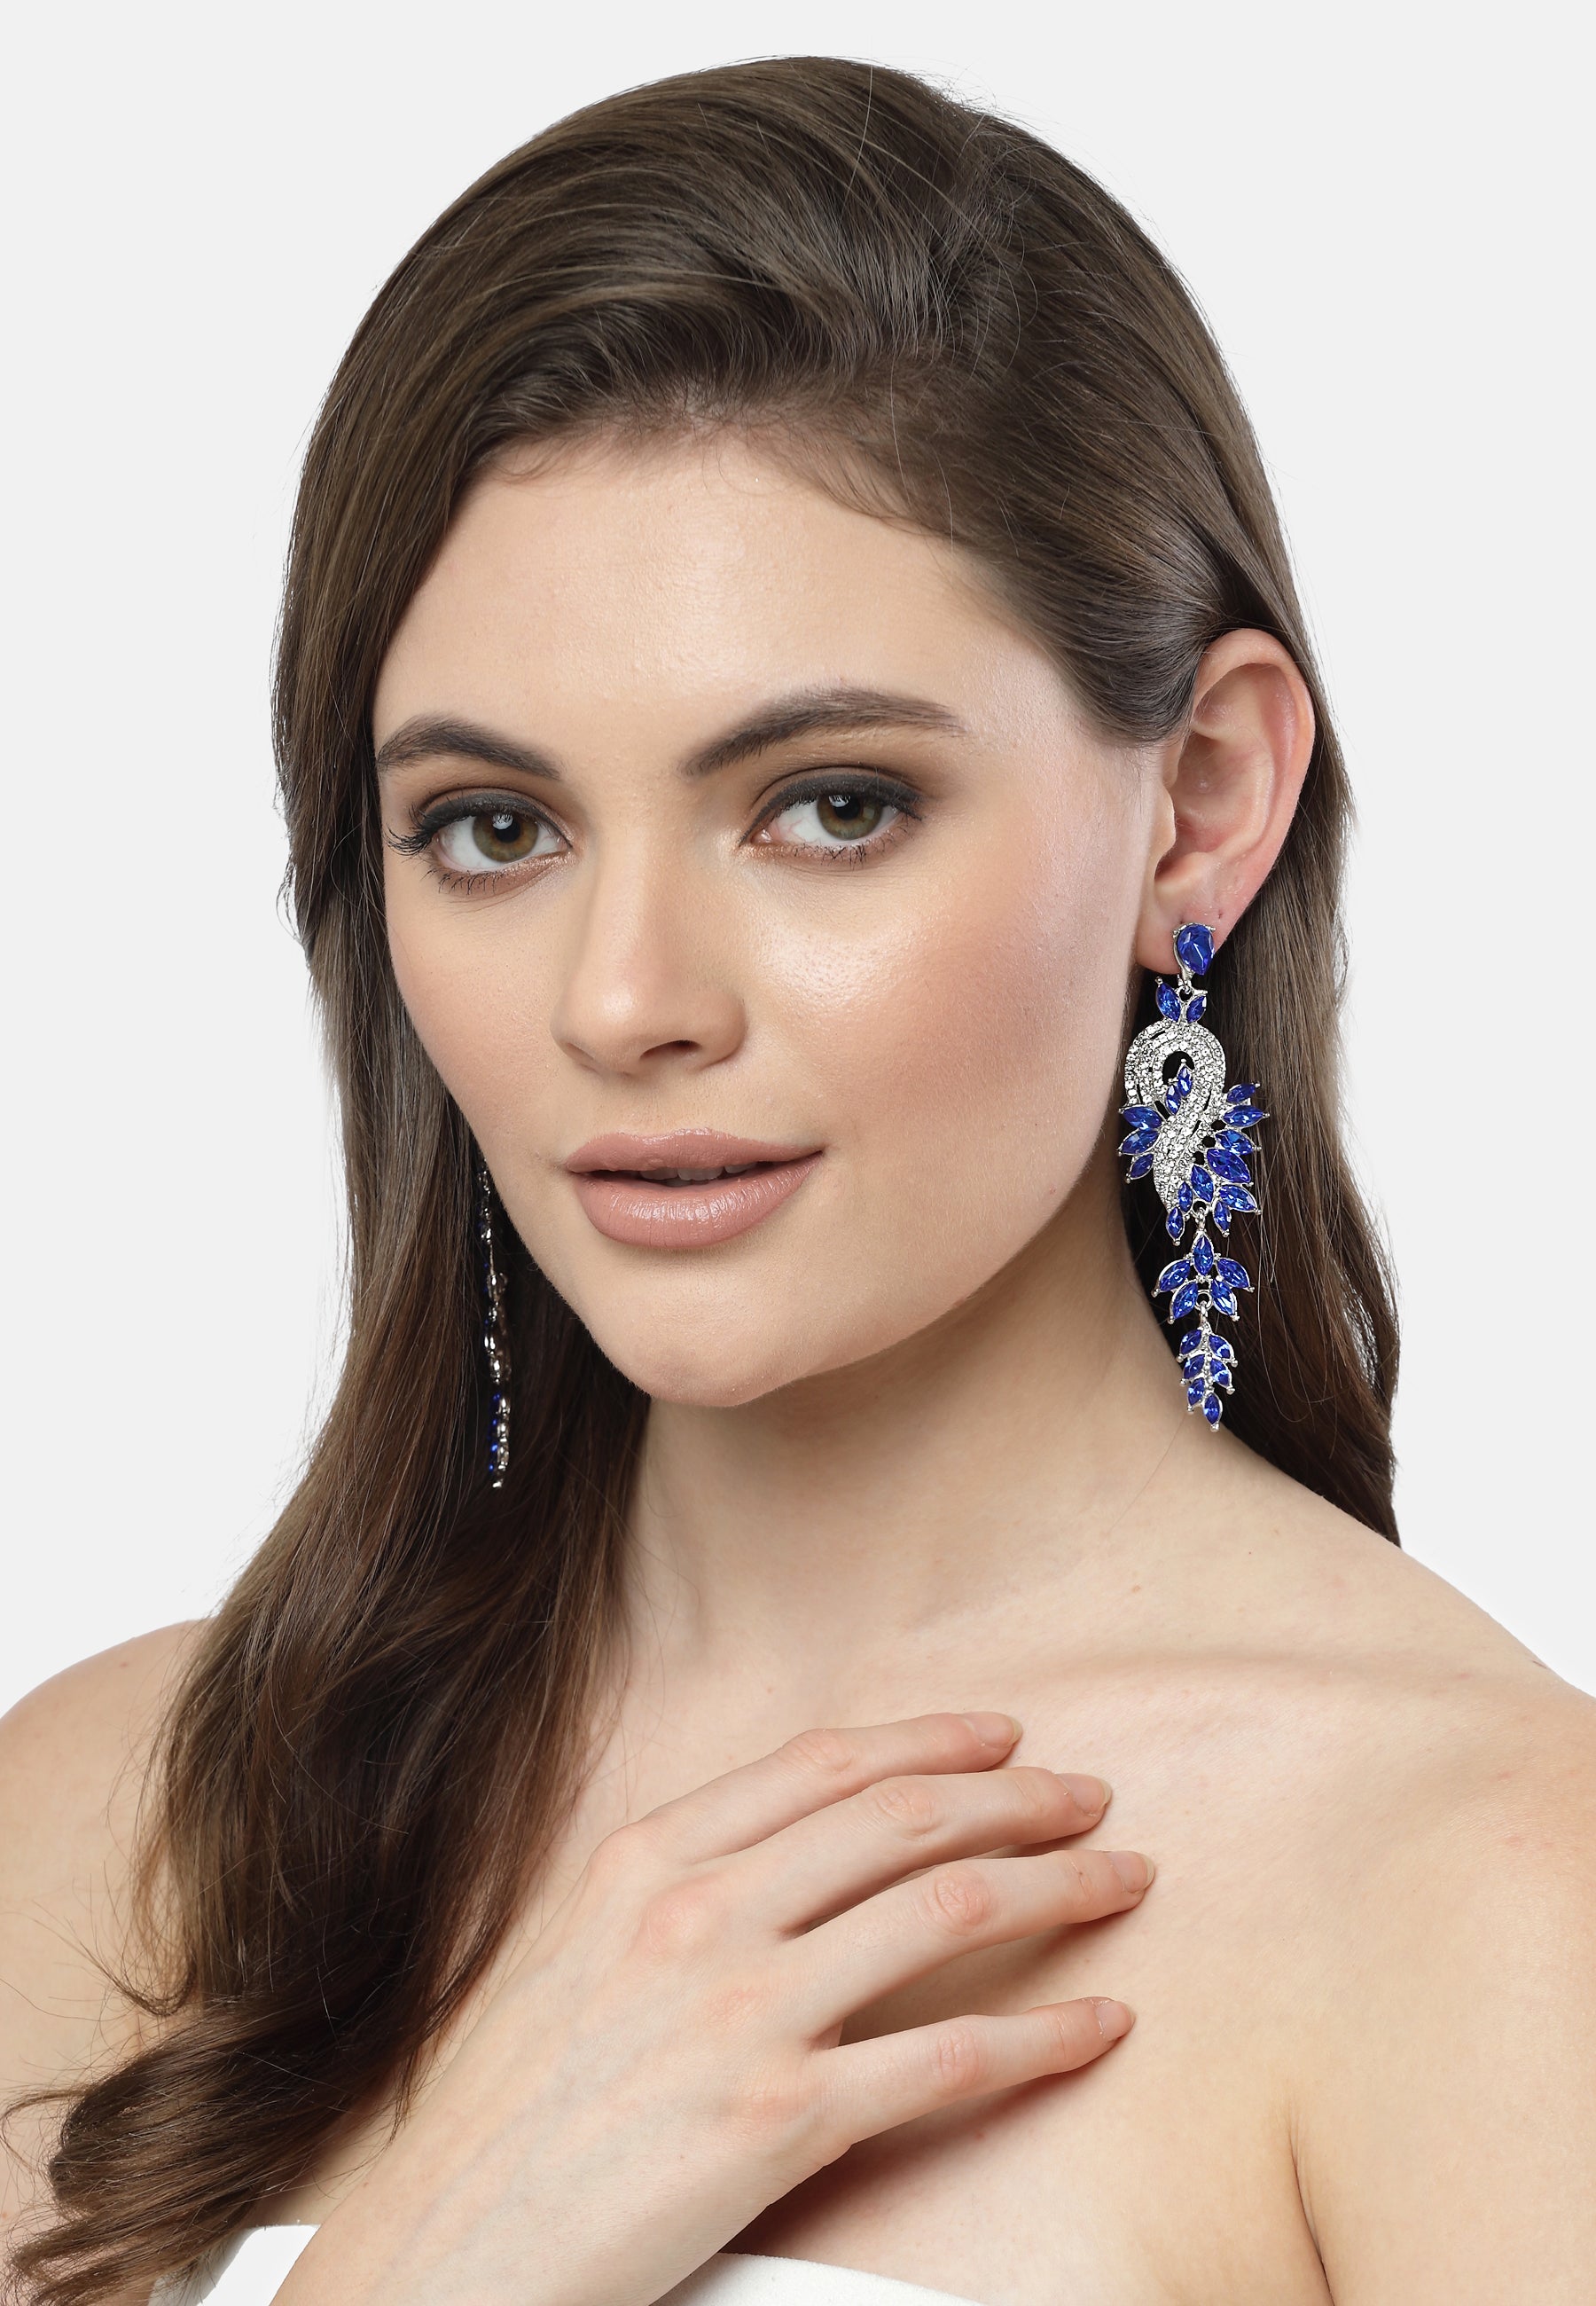 Blue Crystal Leaf Earrings